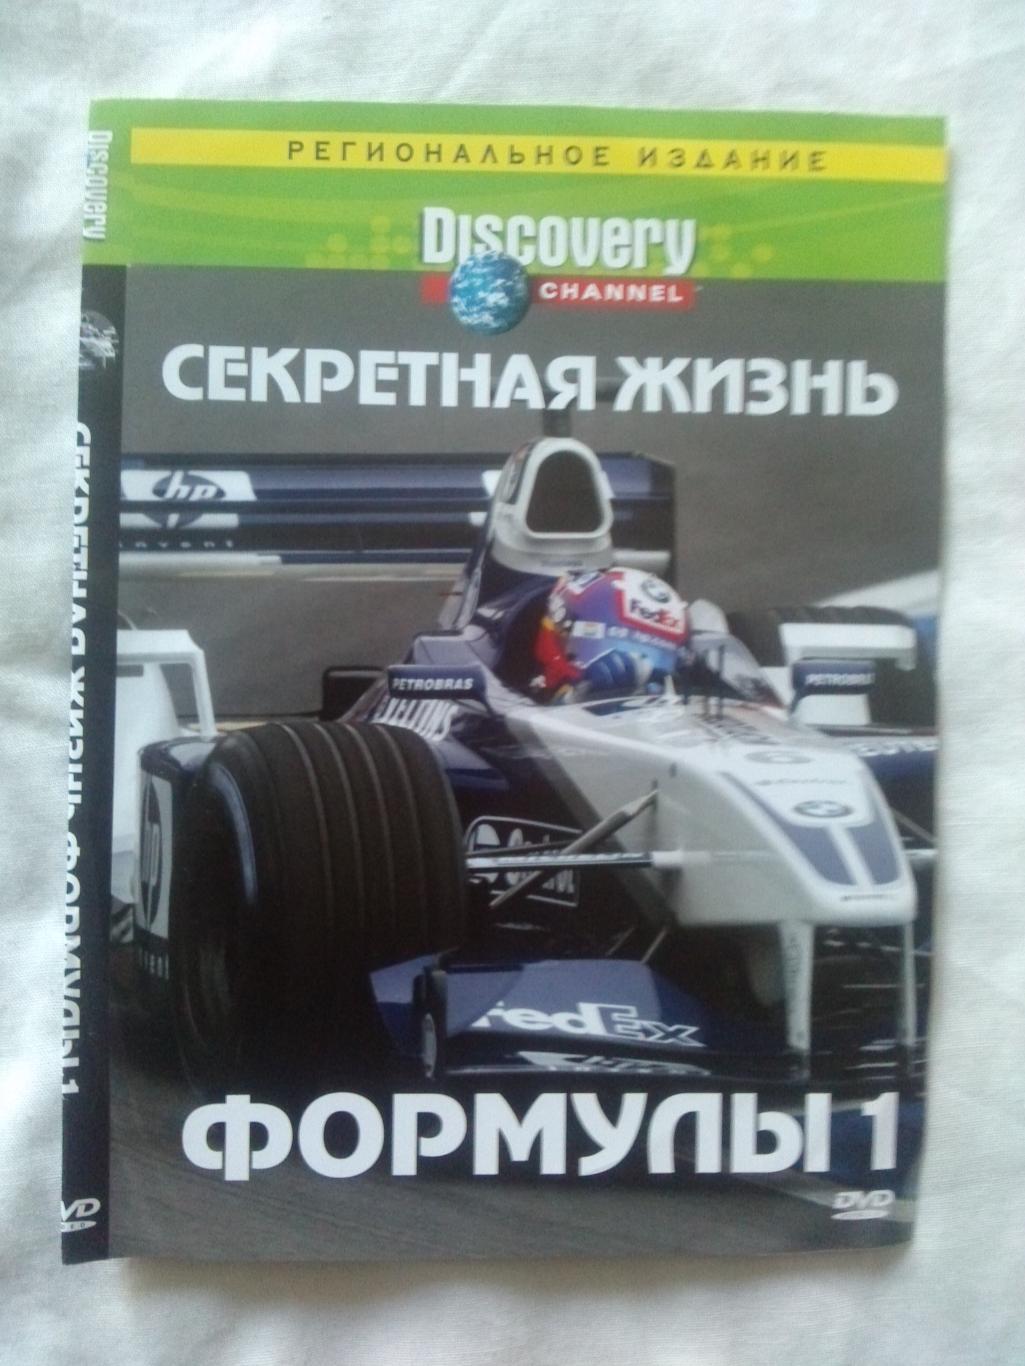 DVD Discovery : Секретная жизнь Формулы - 1 (Автогонки) лицензия (новый)